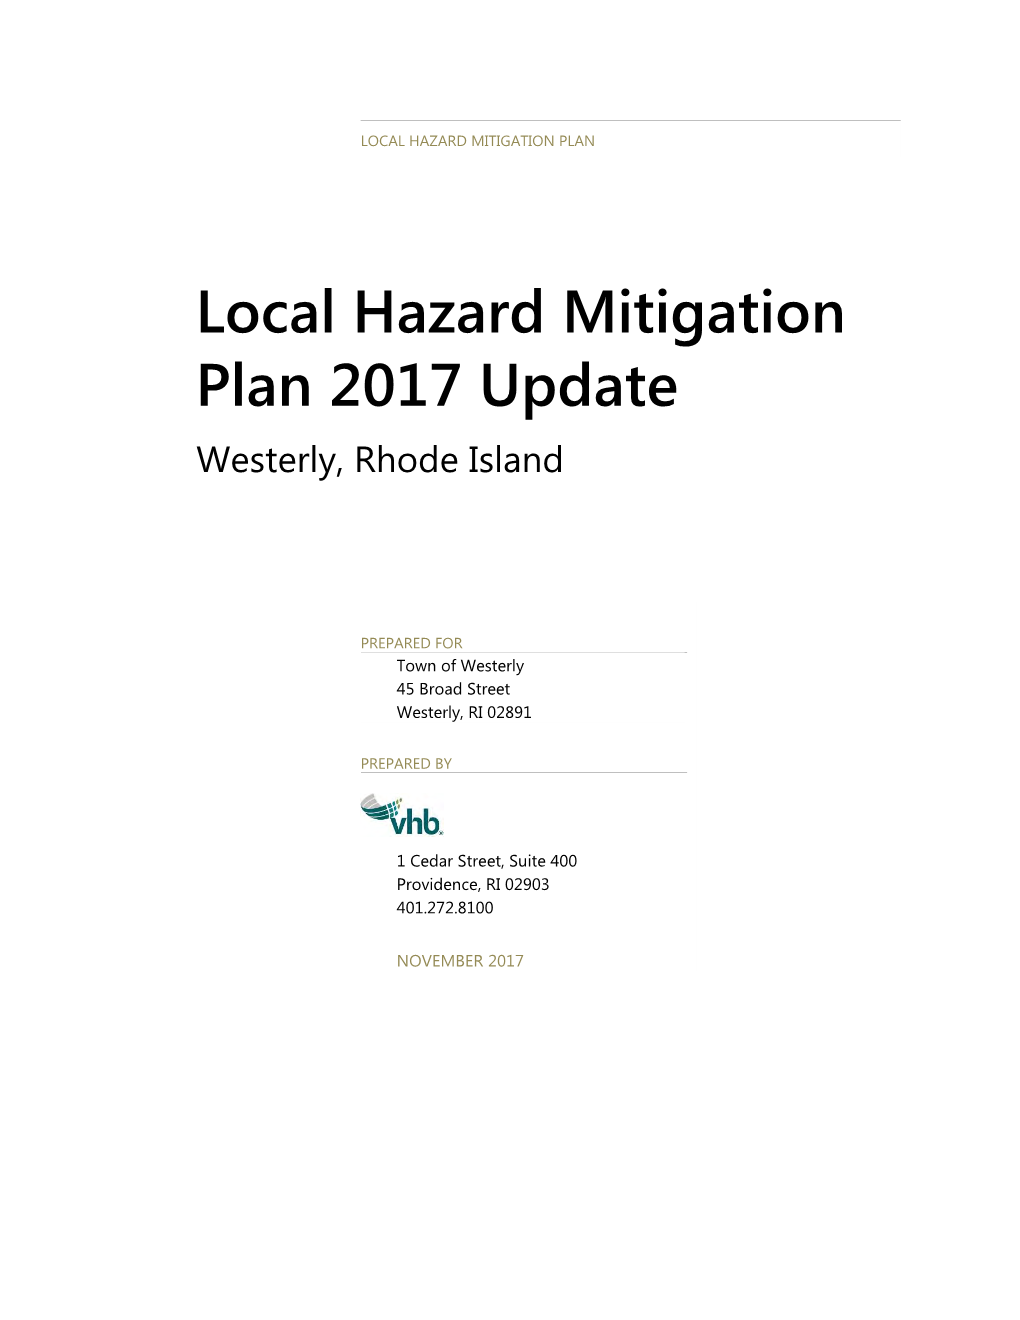 Local Hazard Mitigation Plan 2017 Update Westerly, Rhode Island